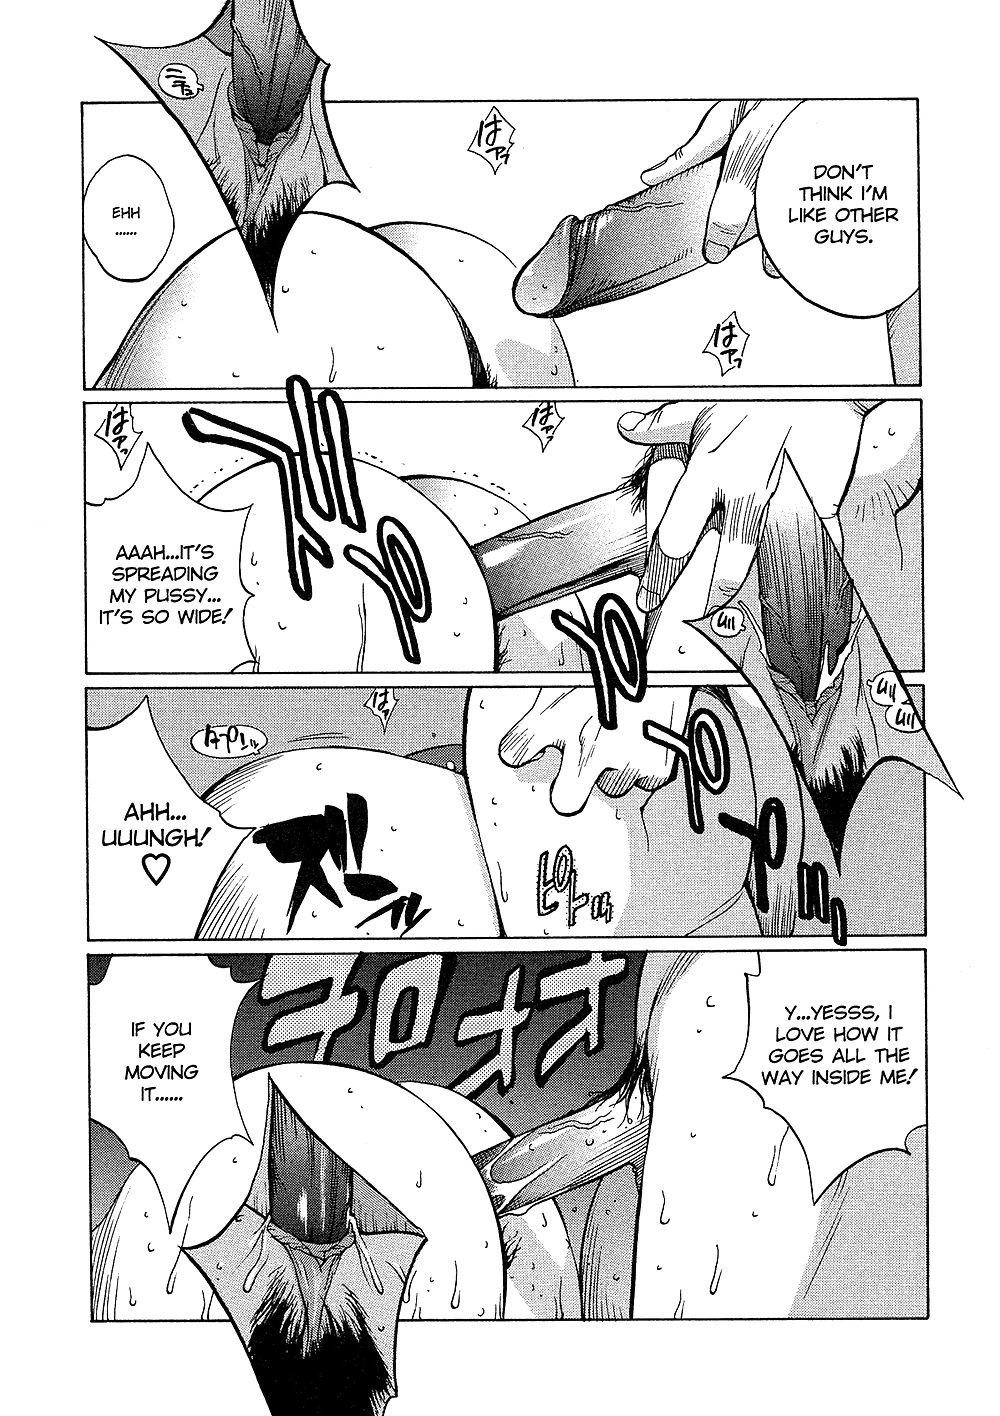 (comic hentai) yumisuke kotoyoshi erotic works #2
 #21623413